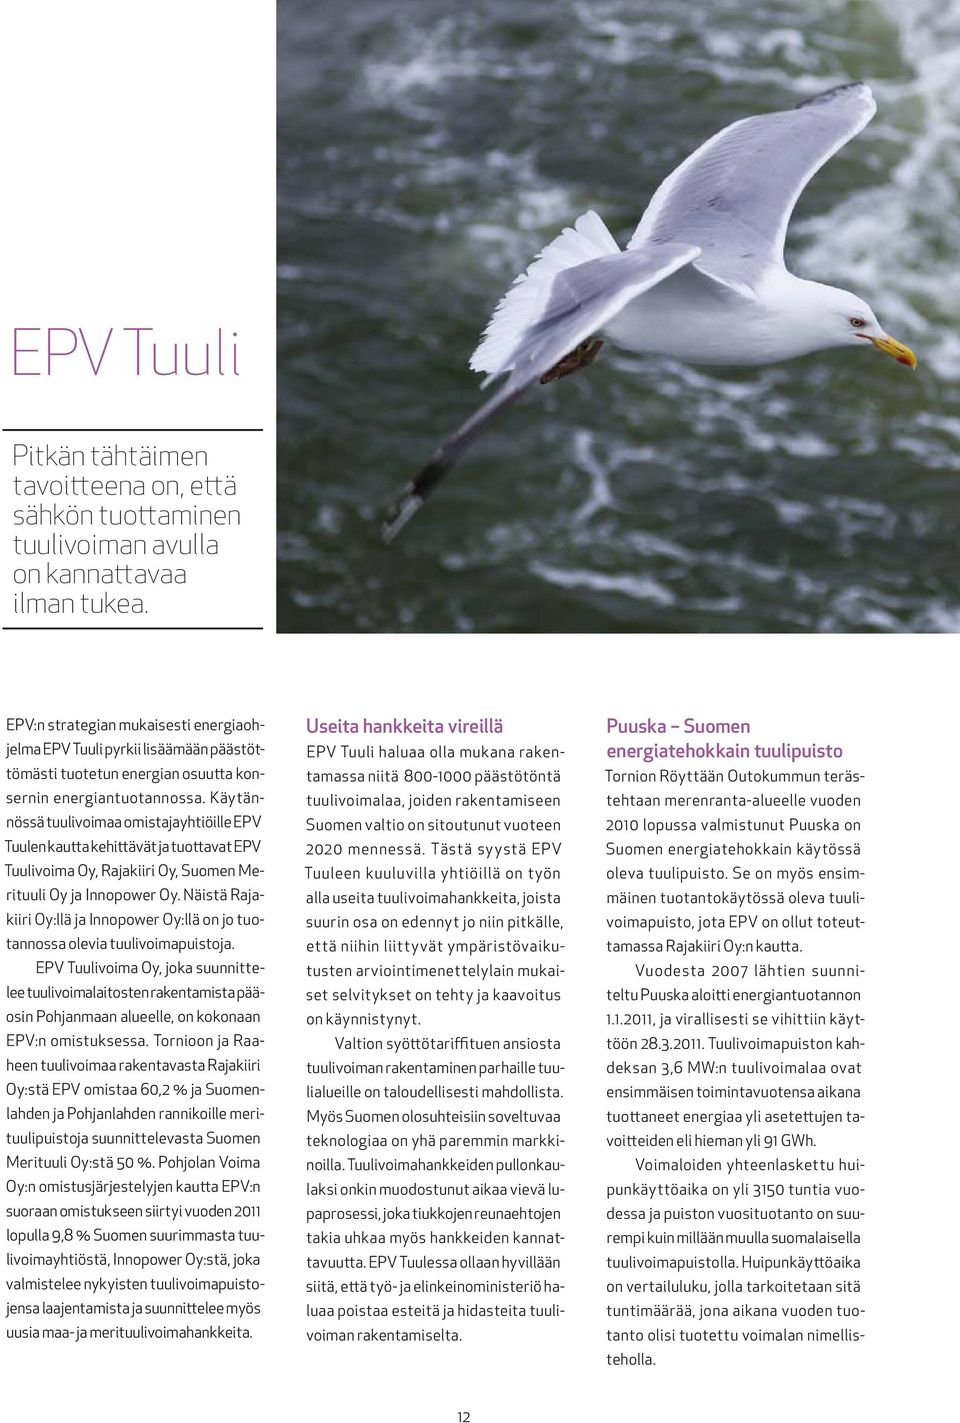 Käytännössä tuulivoimaa omistajayhtiöille EPV Tuulen kautta kehittävät ja tuottavat EPV Tuulivoima Oy, Rajakiiri Oy, Suomen Merituuli Oy ja Innopower Oy.